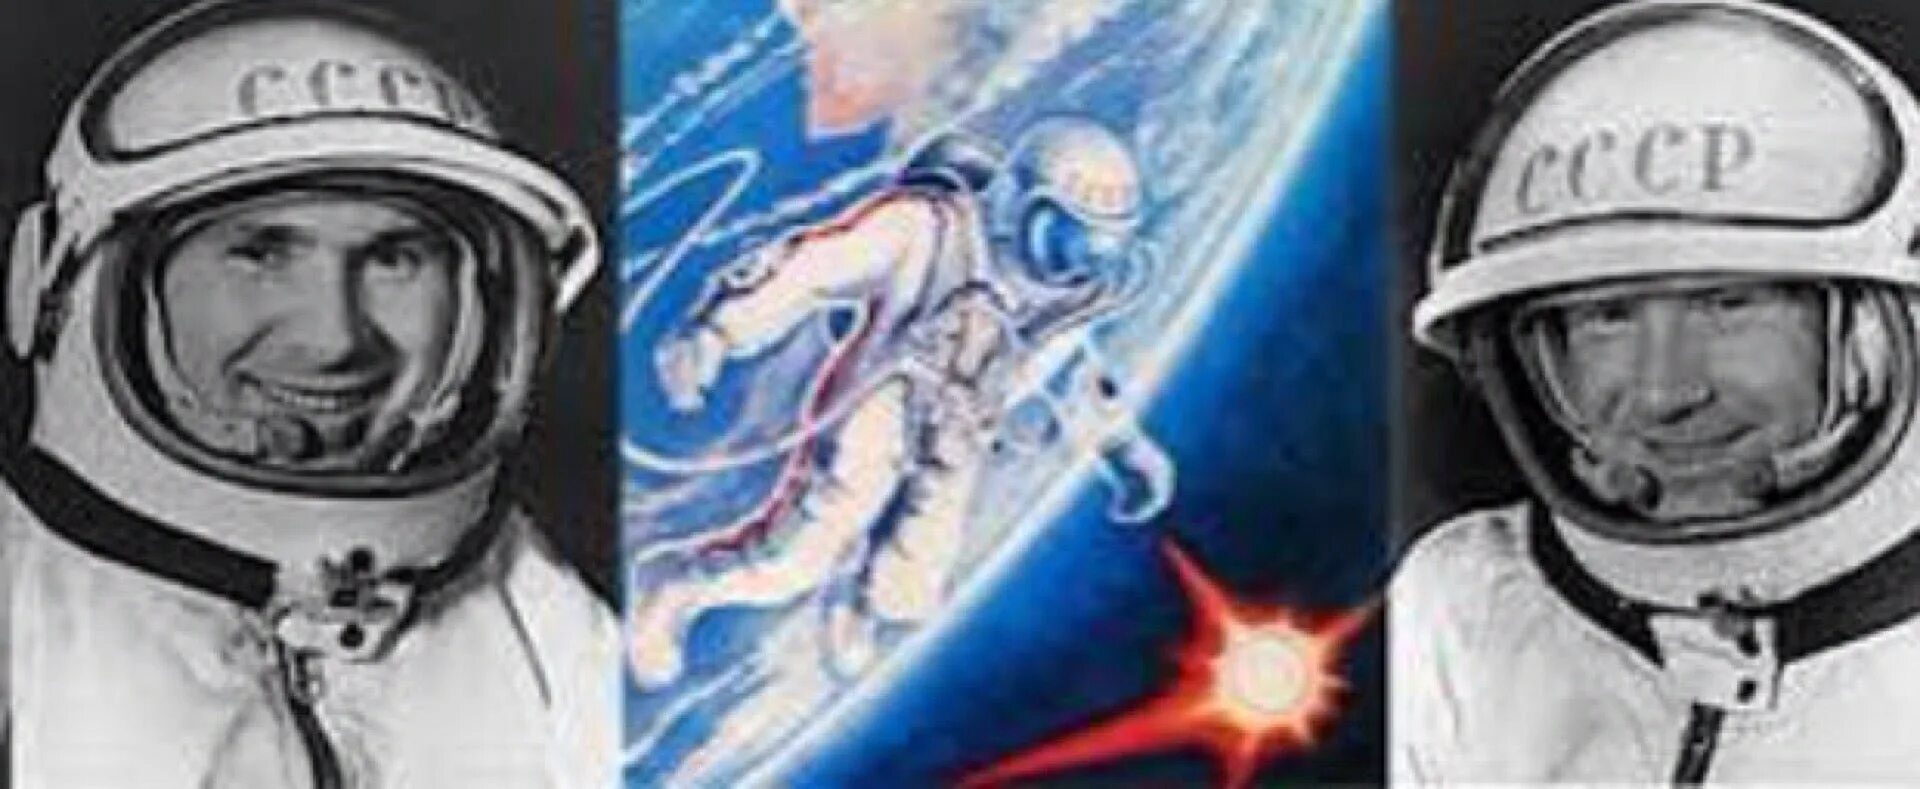 Первый человек в космосе 1965 год. Восход-2 космический корабль Леонов. Восход 2 космонавты Леонов и Беляев.